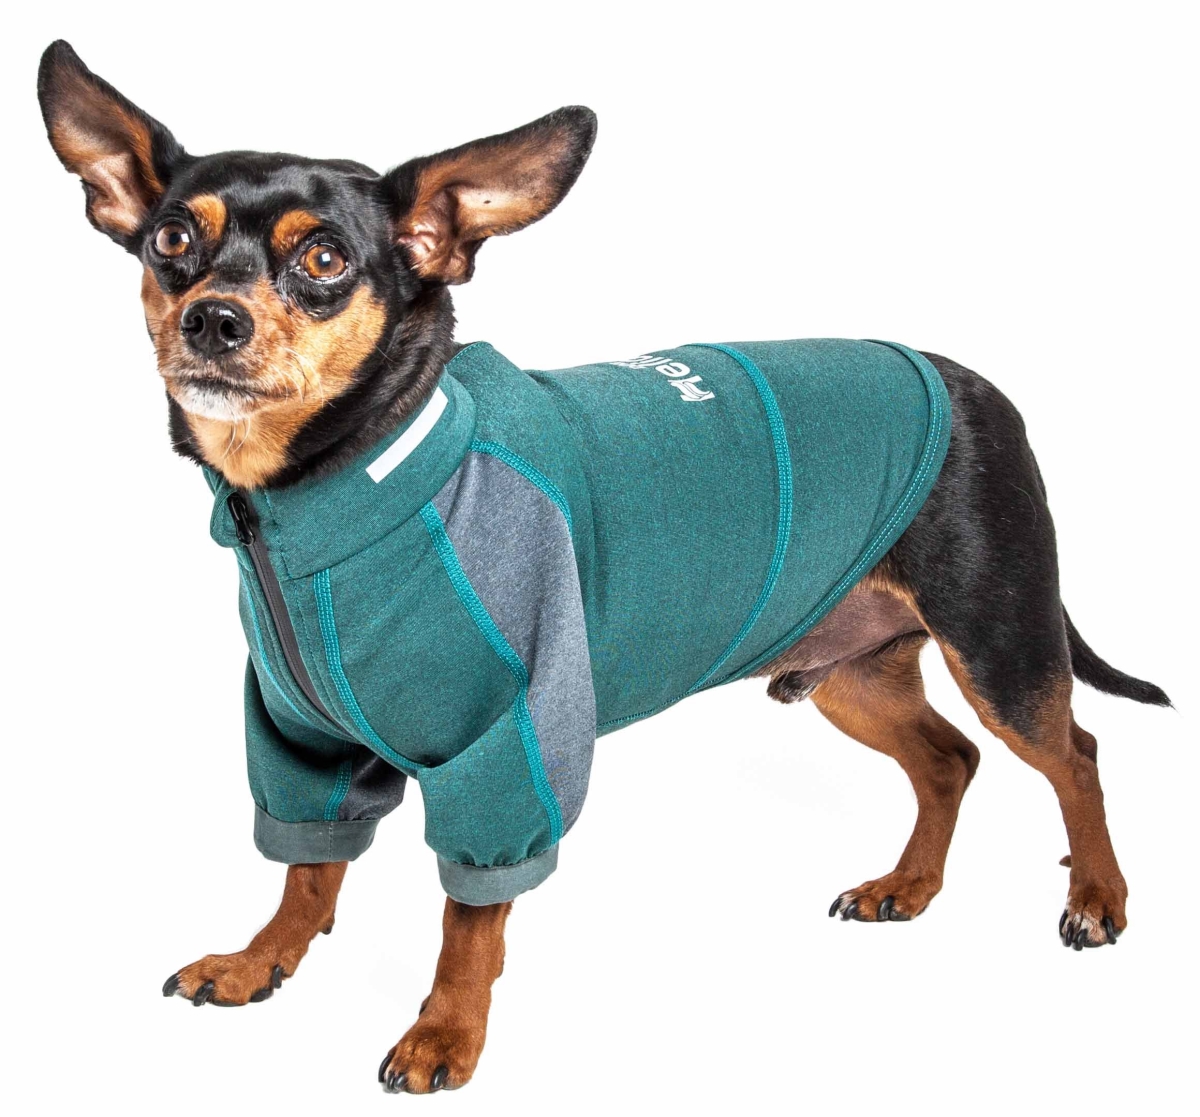 Tshl6gnxs Eboneflow Mediumweight 4-way-stretch Flexible & Breathable Performance Dog Yoga T-shirt, Forest Green & Grey - Extra Small